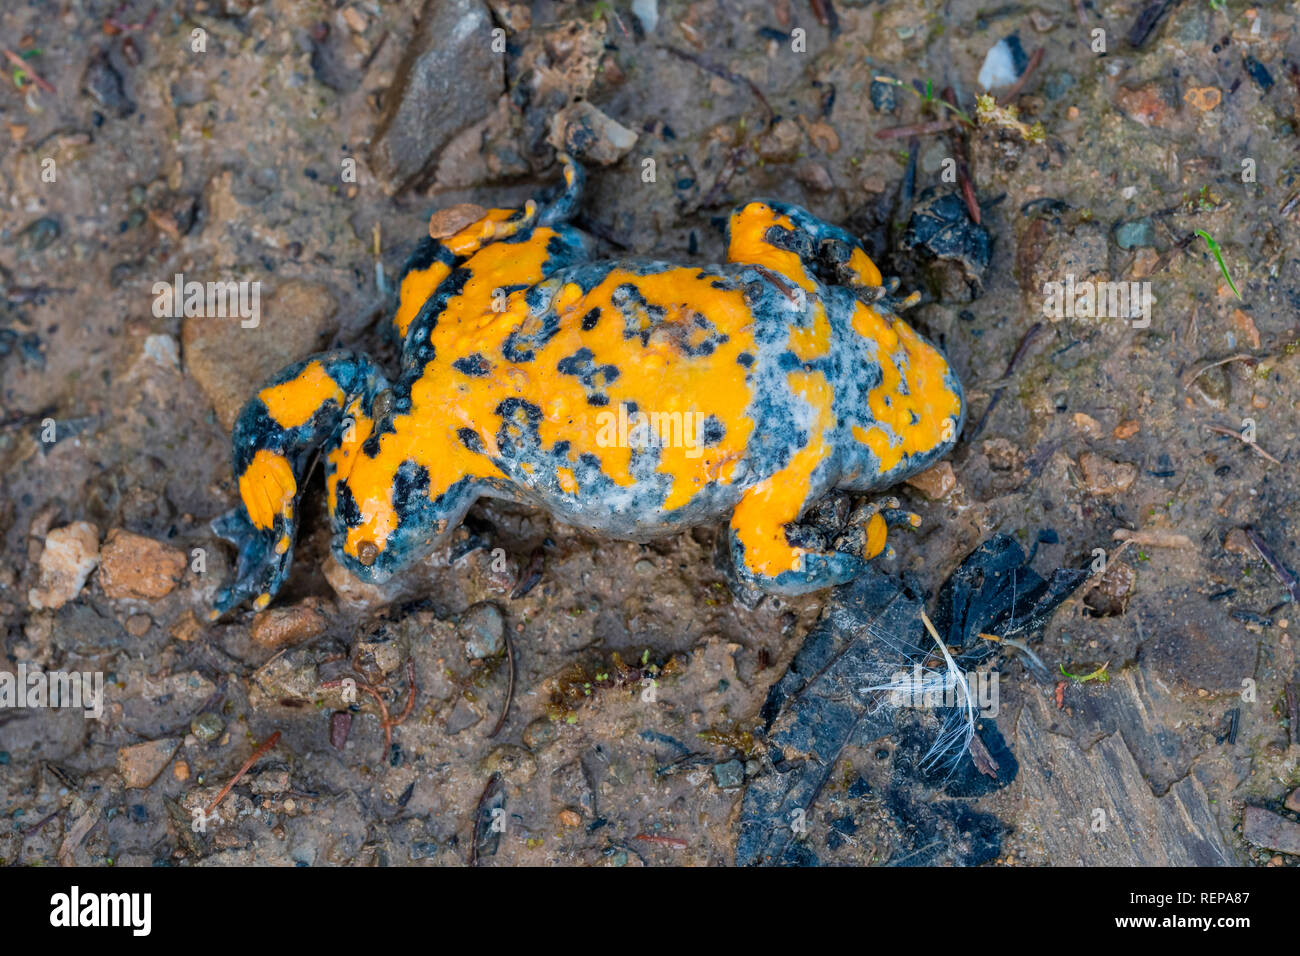 Yellowbelly Toad (Bombina variegata) Stock Photo